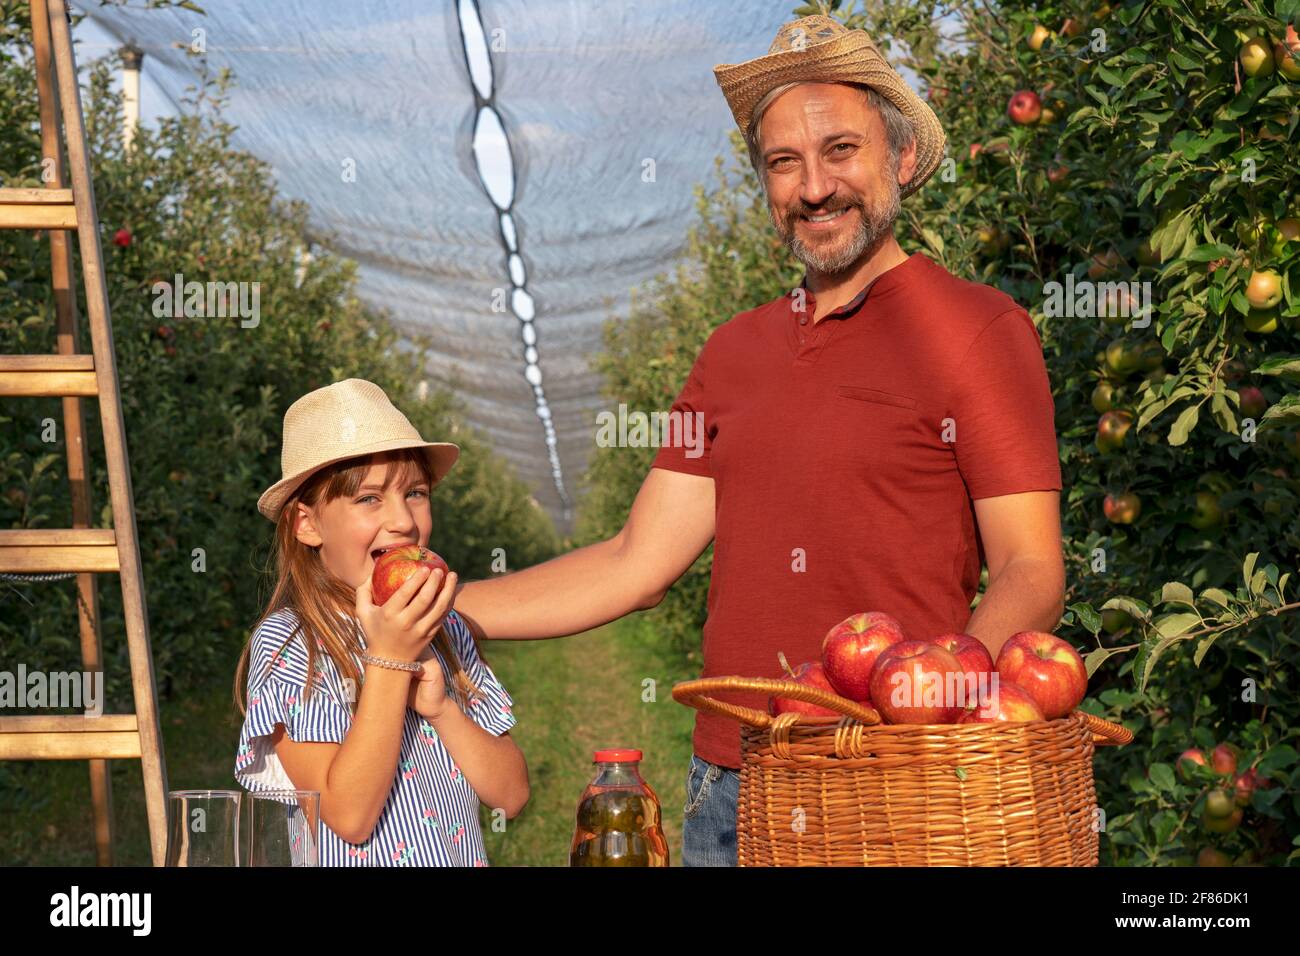 Konzept Für Gesunde Ernährung. Vater und Tochter pflücken Äpfel in einem Obstgarten. Niedliche Kleine Mädchen Essen Apfel. Stockfoto